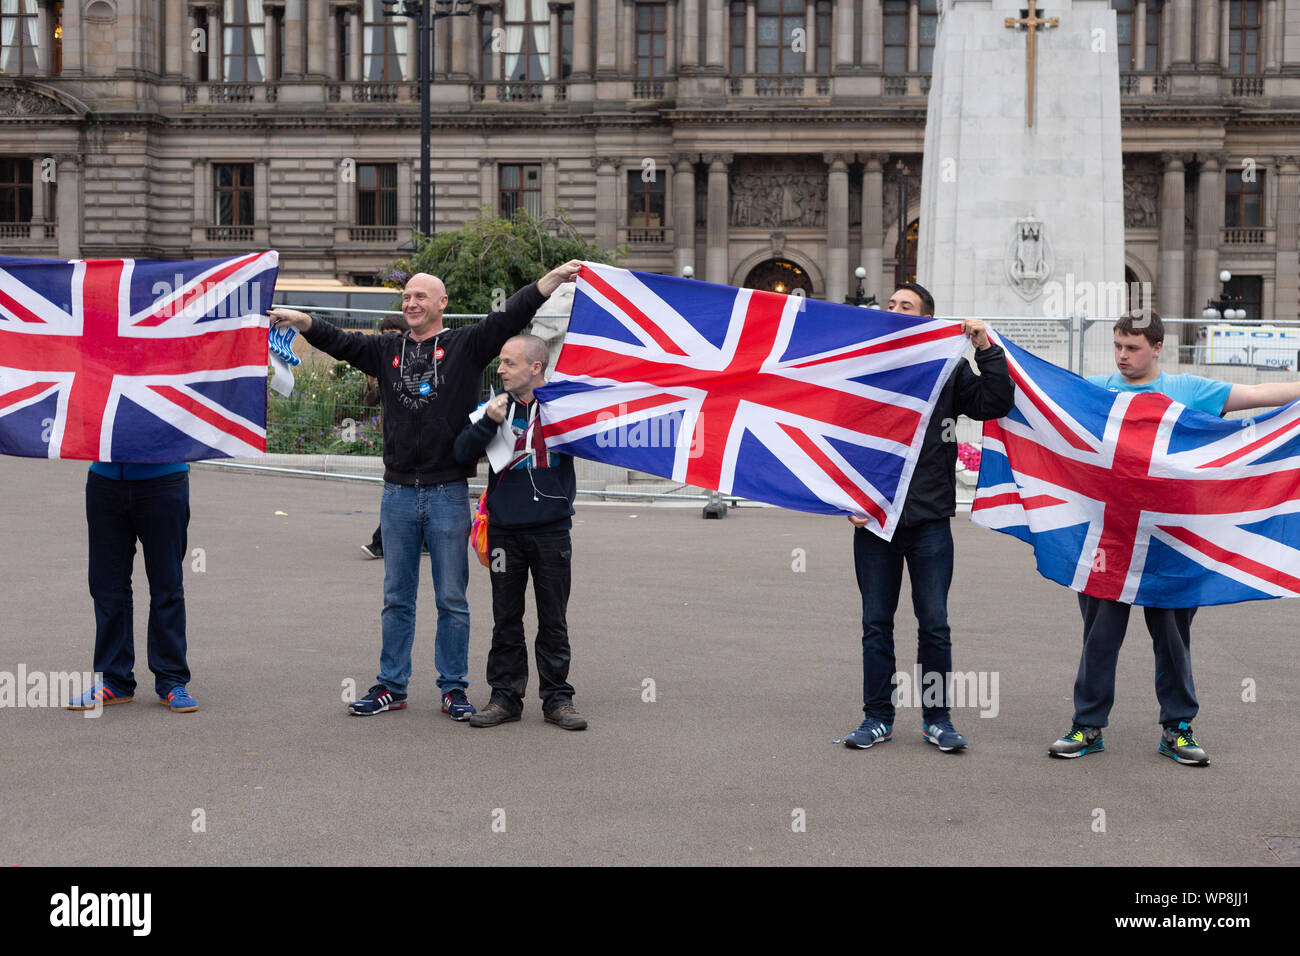 Pas de l'indépendance de l'Ecosse avec les électeurs de George Square drapeaux britanniques démontrant, Glasgow, Royaume-Uni le jeudi septembre 18, 2014 Banque D'Images